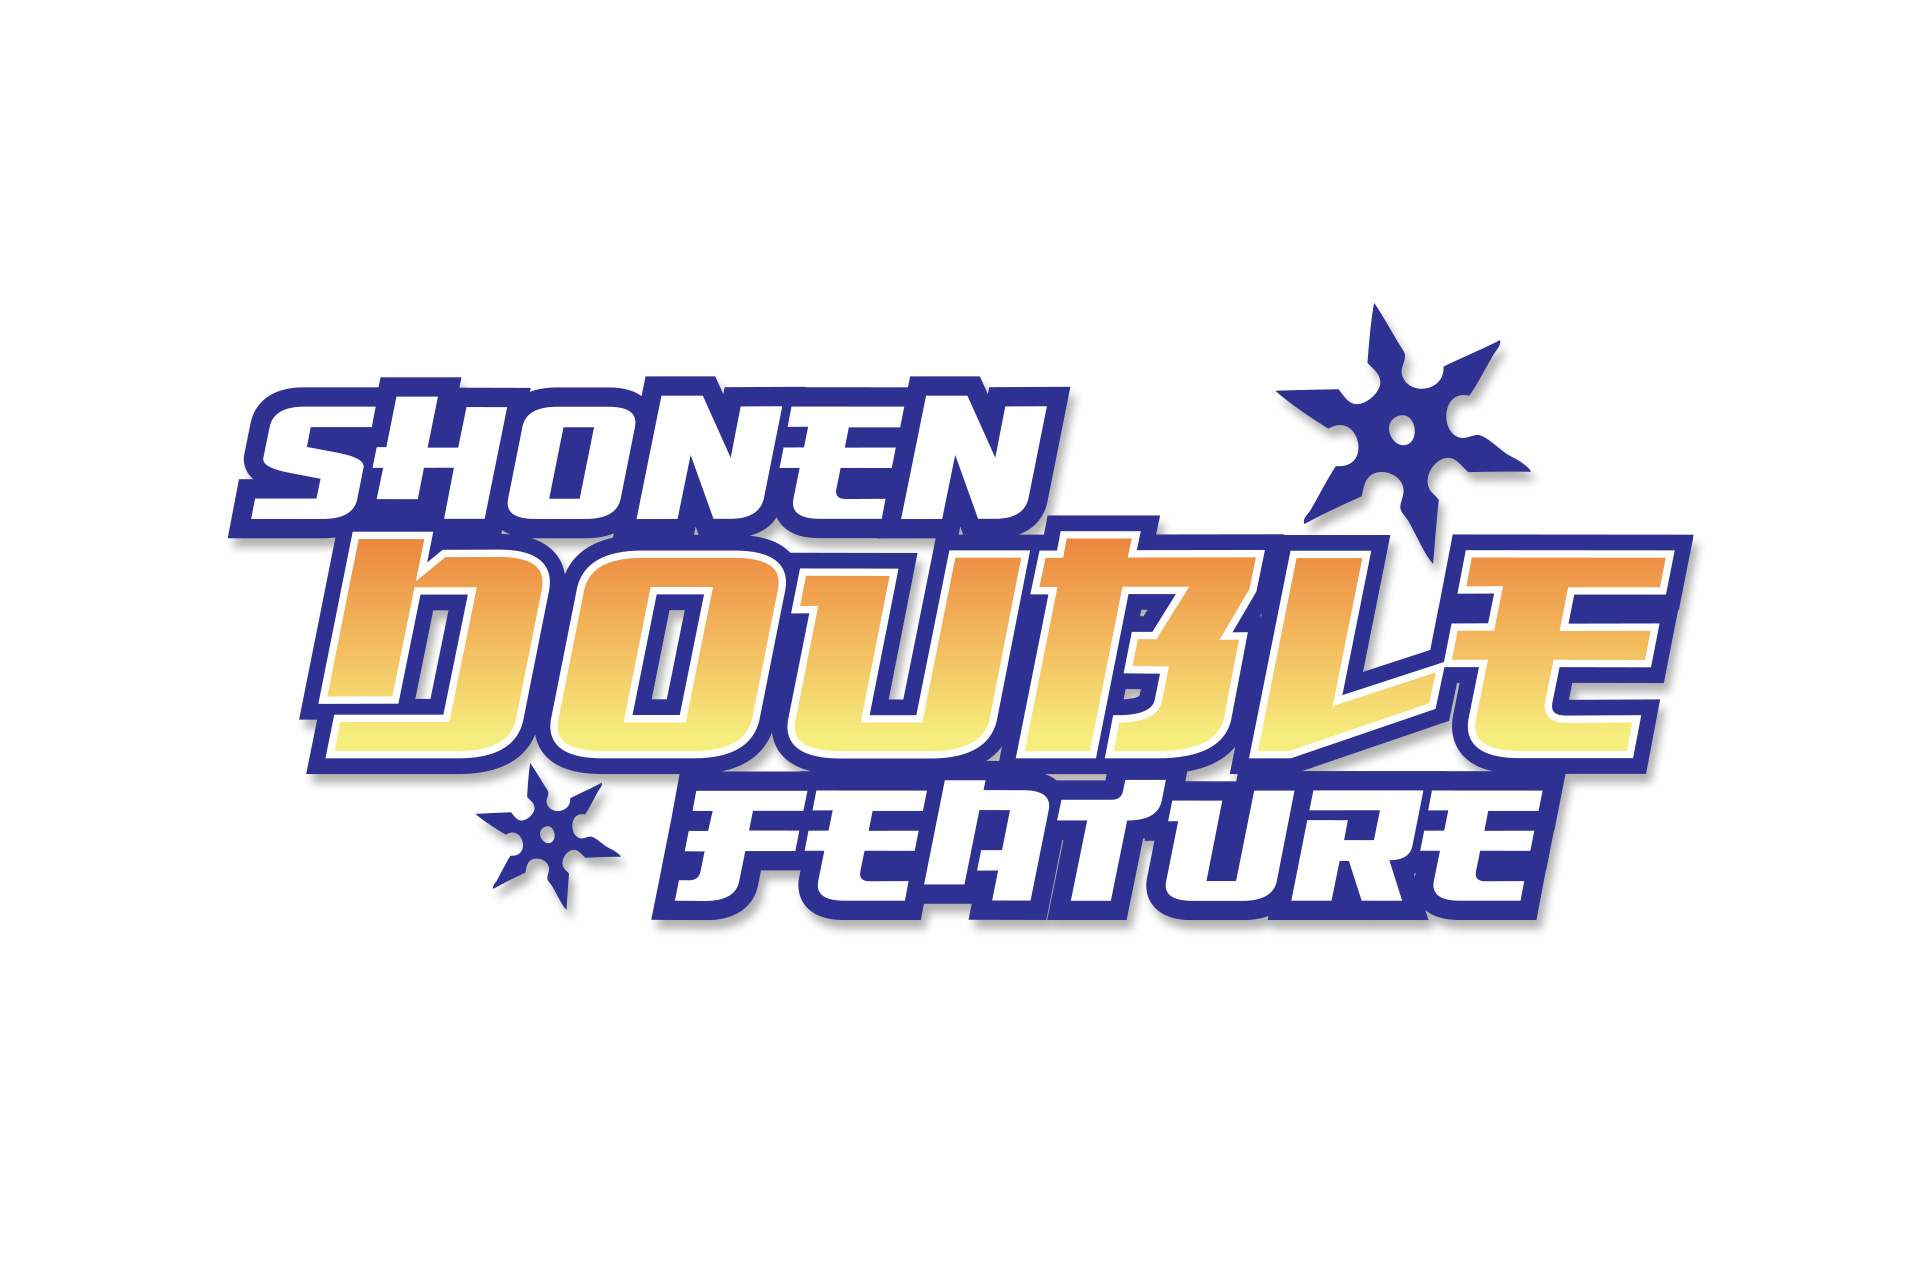 Shonen Double Feature